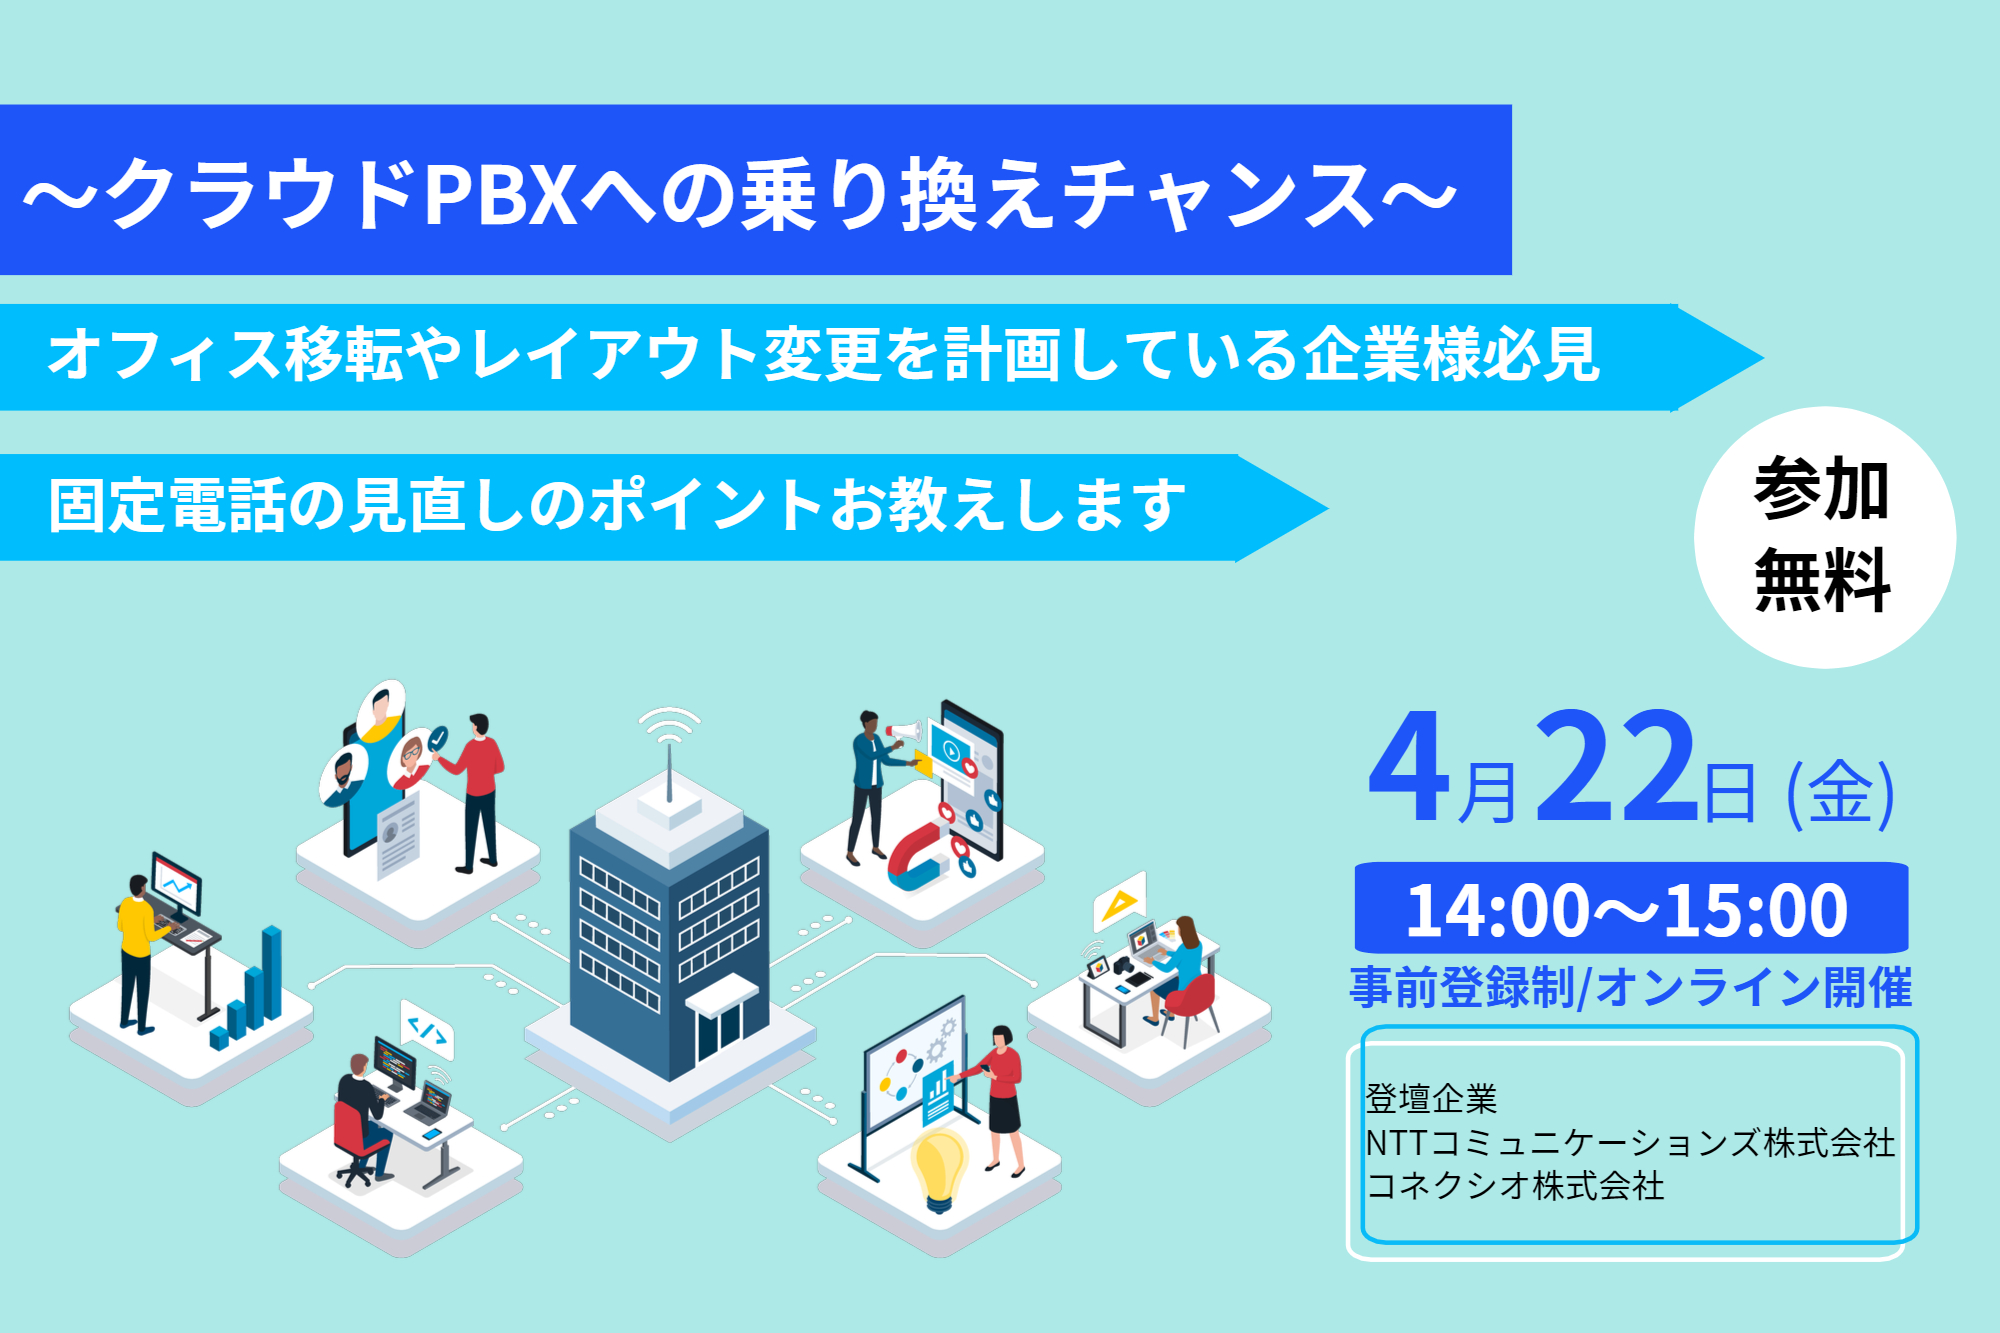 〔第5回〕関西働き方改革EXPO現地レポートFinal Day